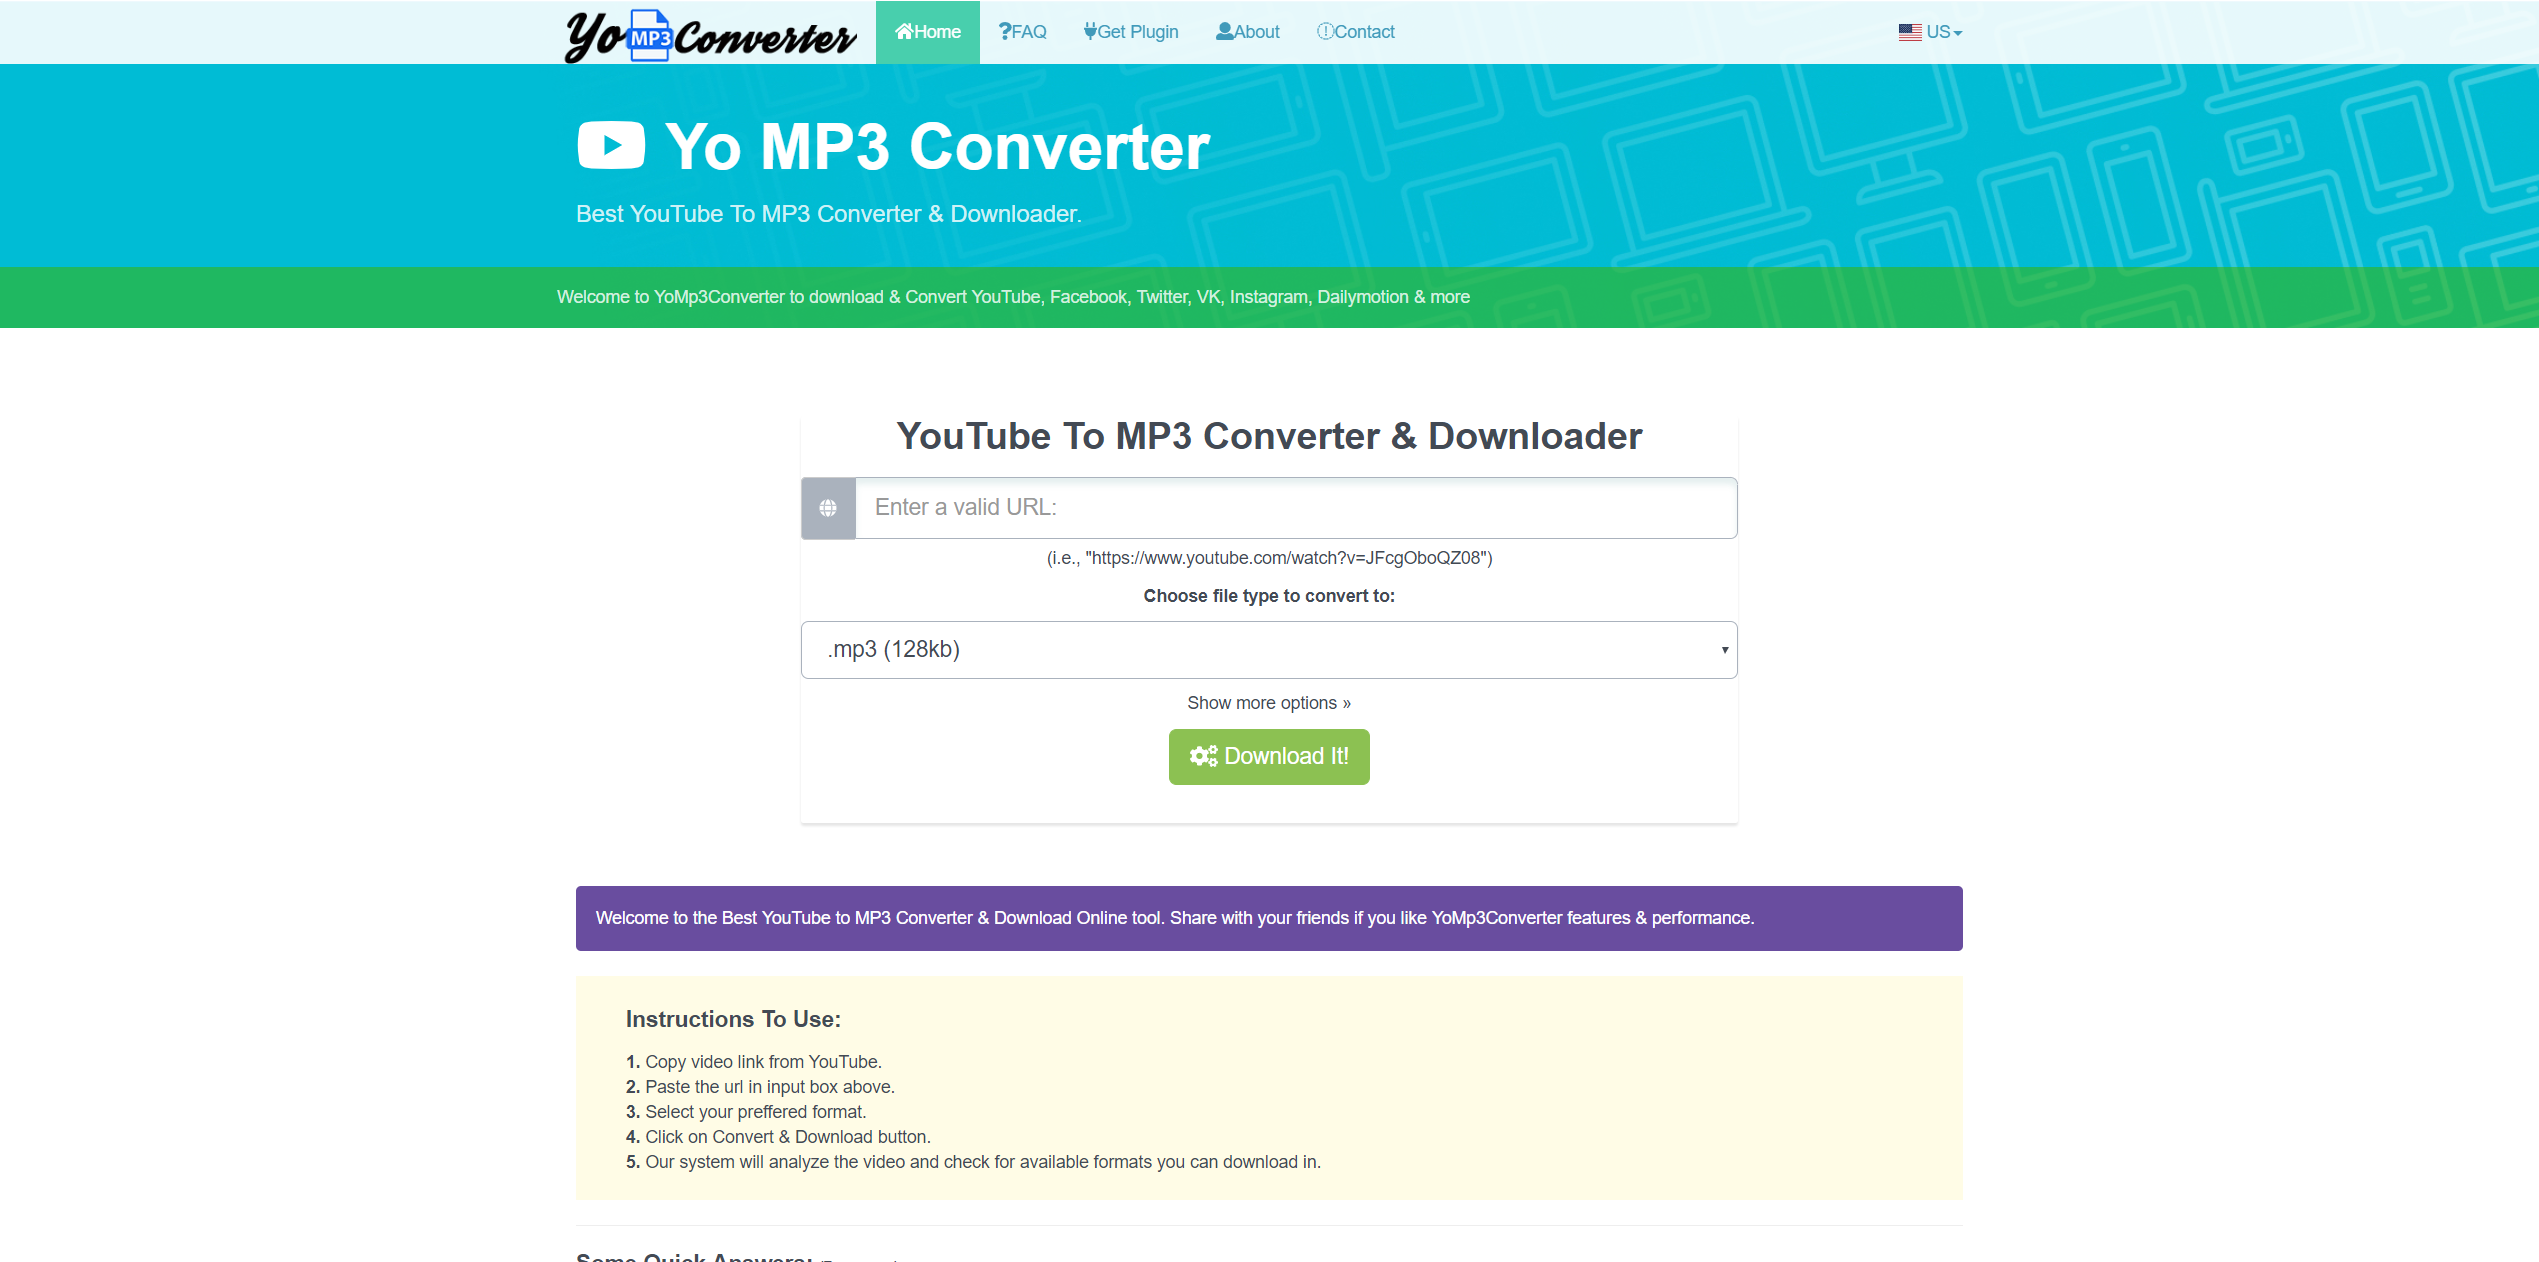 yomp3converter.com